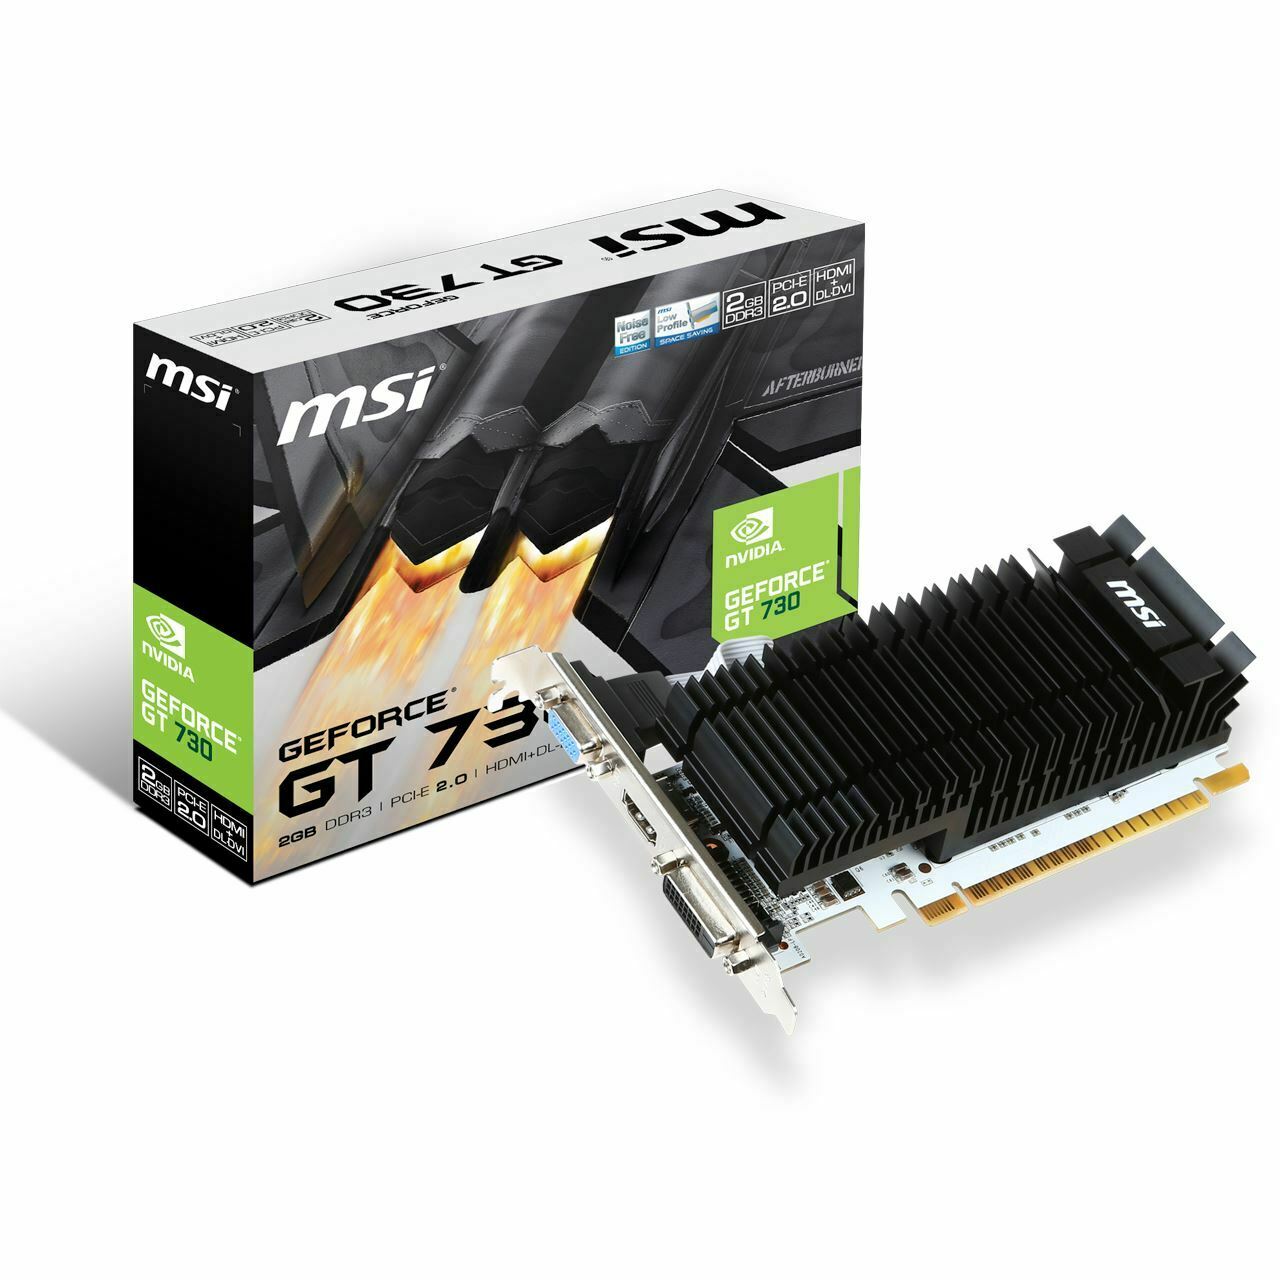 MSI GeForce GT 730 Passiv 2GB PCIe - 12 Monate Gewährleistung